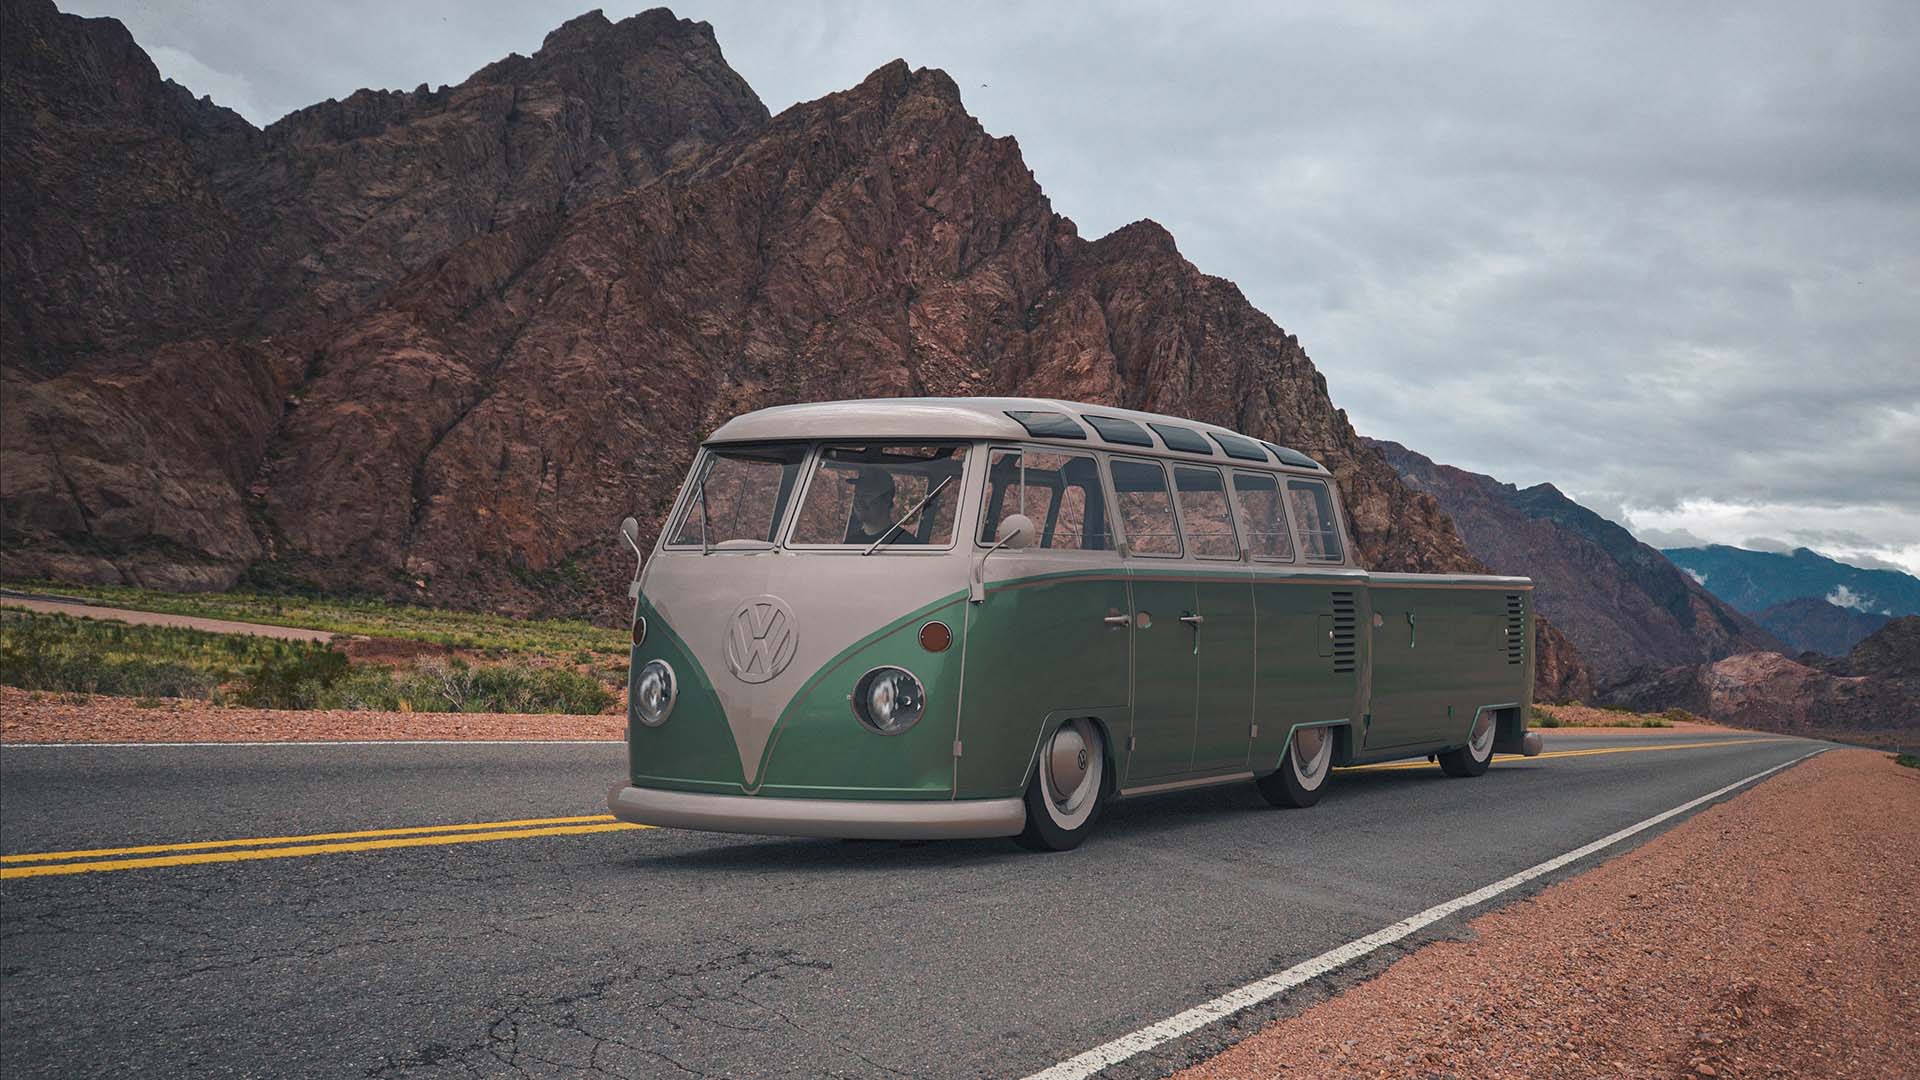 Green volkswagen on road in desert